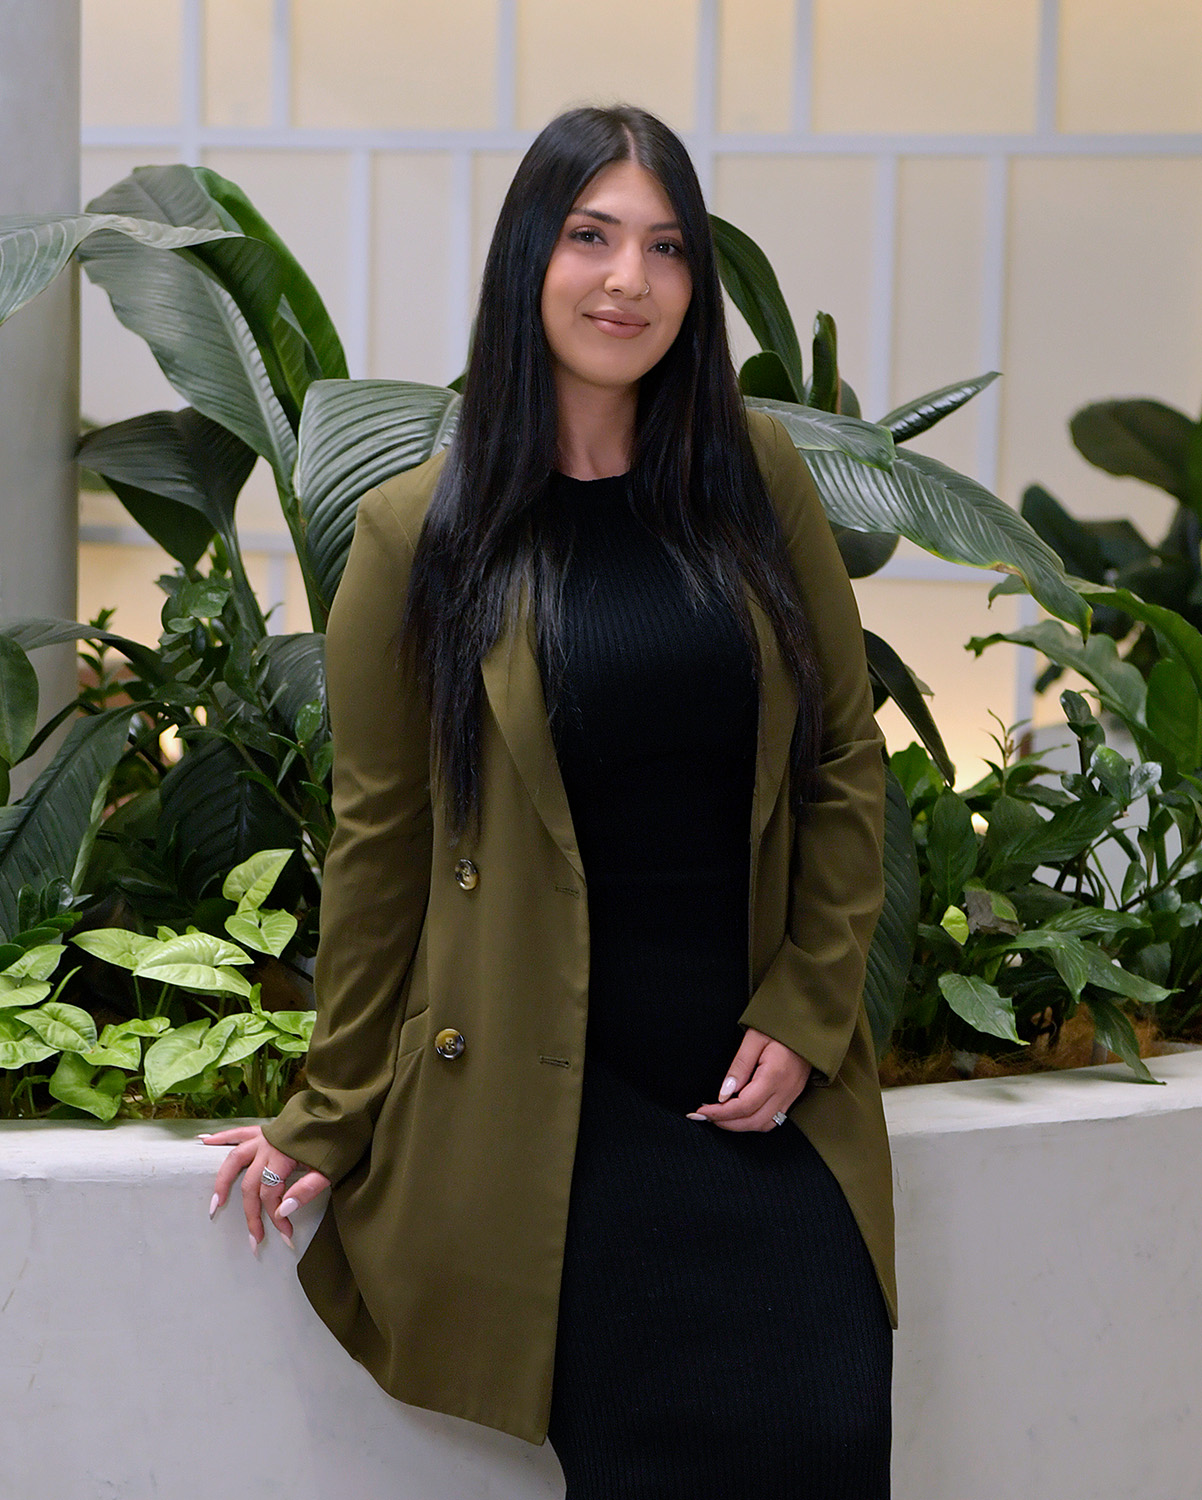 Olivera Petros, Recruitment Consultant at Evolve Manufacturing